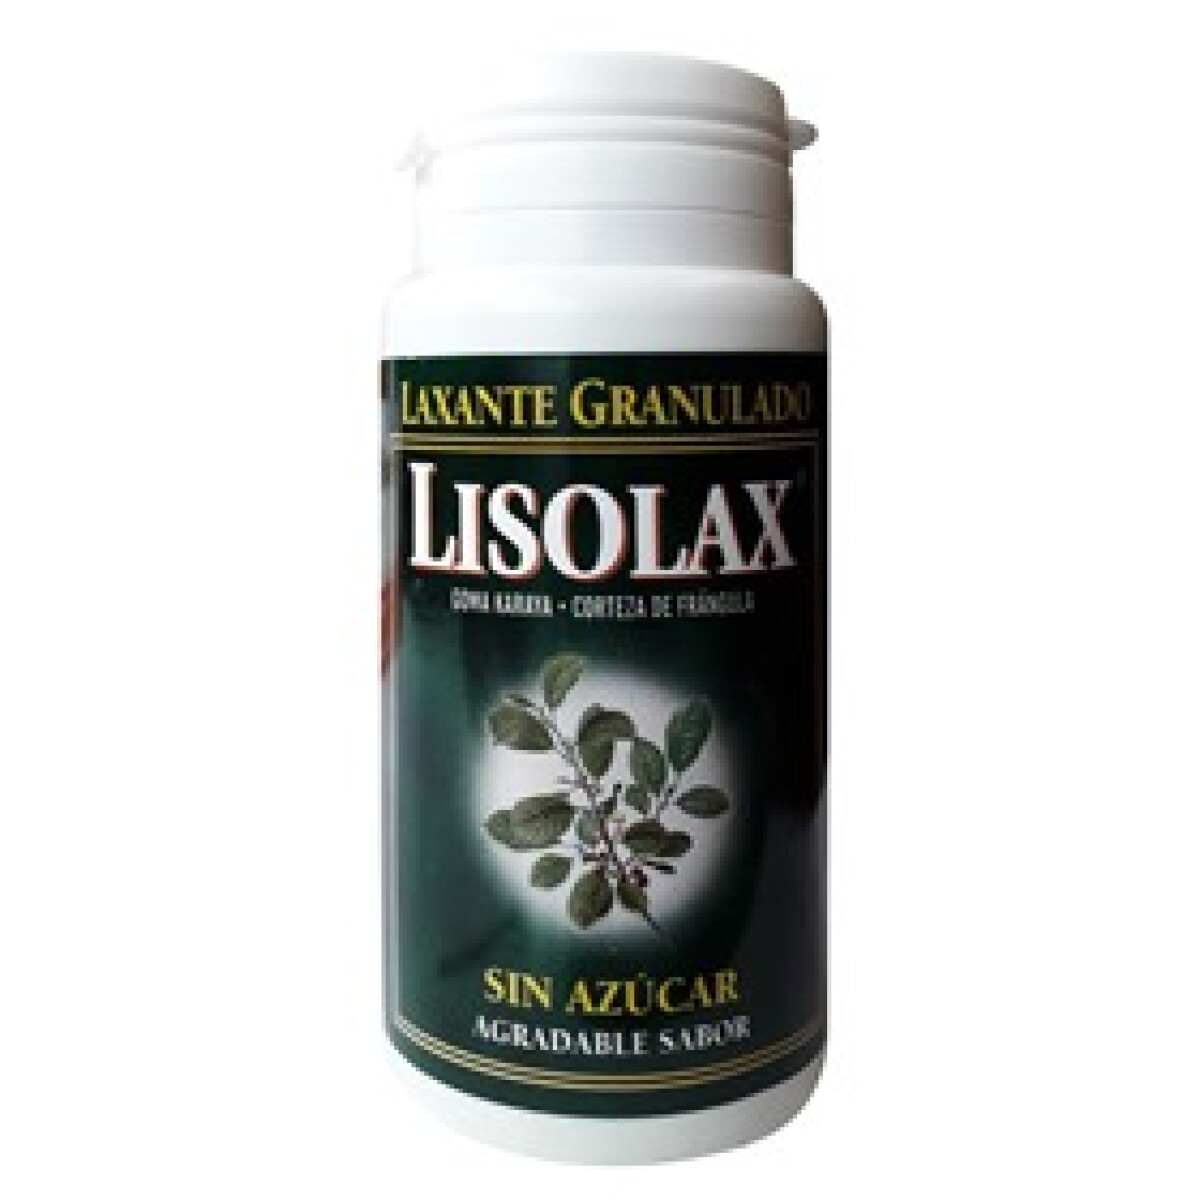 Lisolax 150 Ml. 